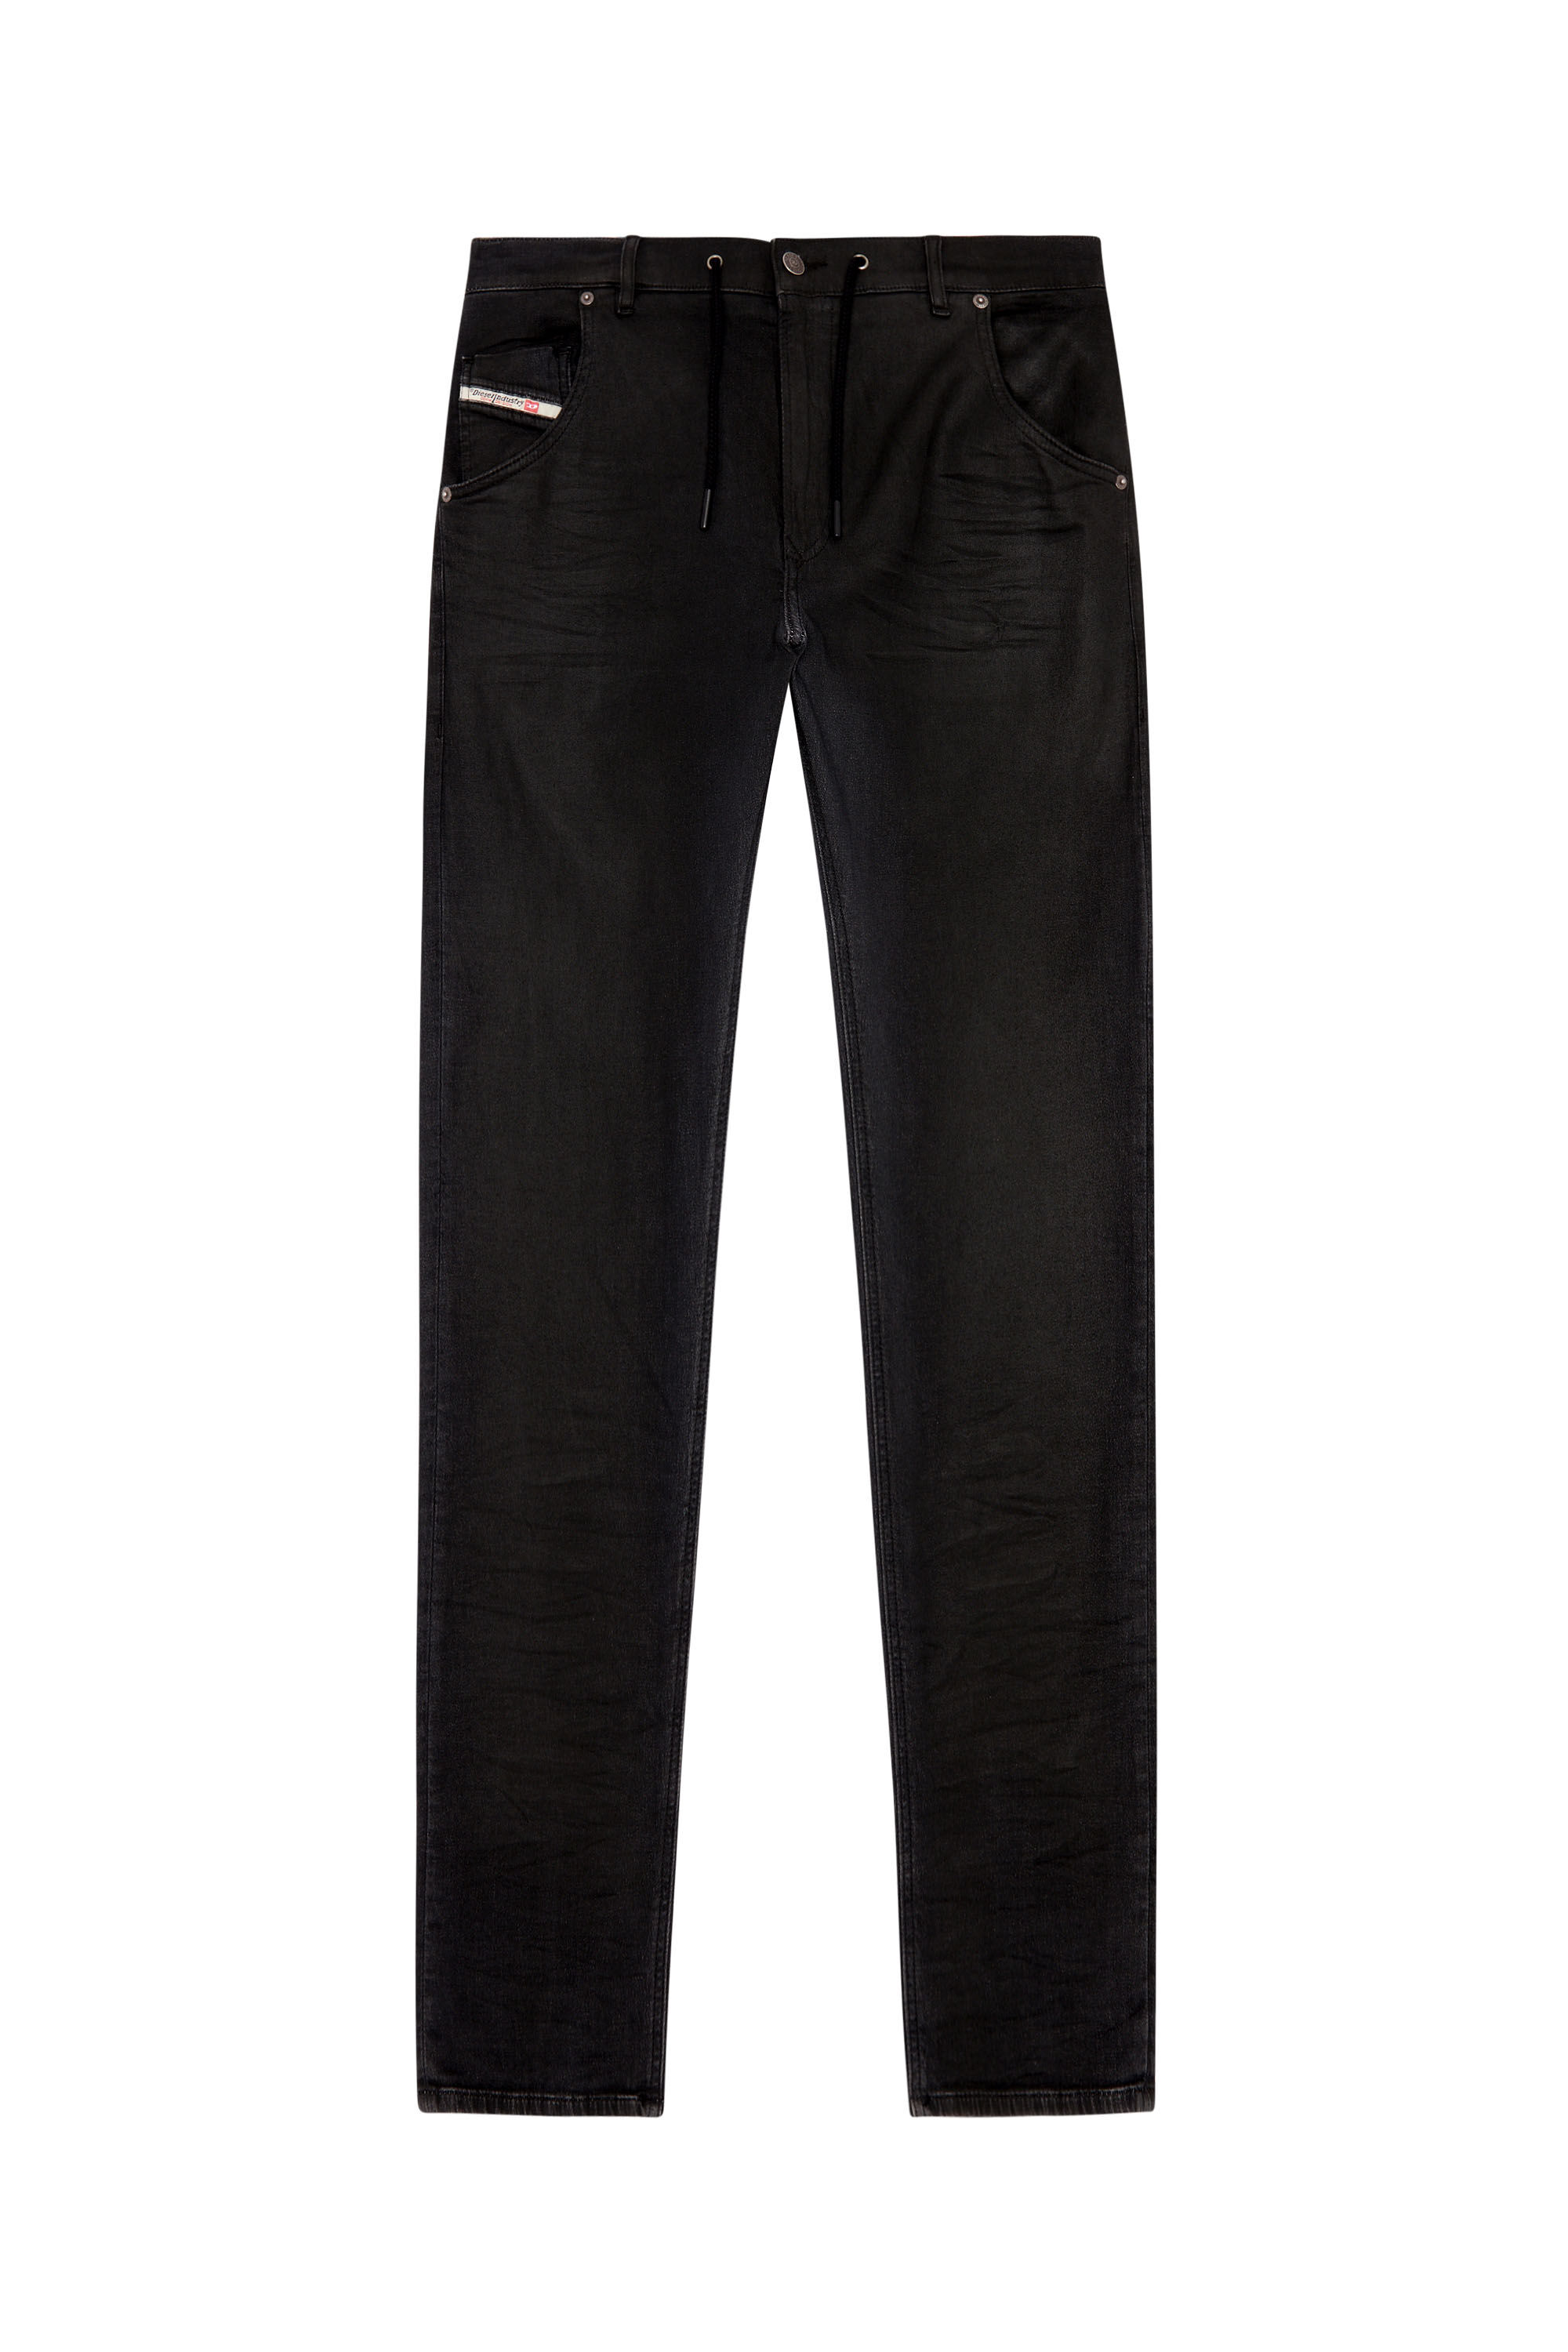 Men's Tapered Jeans | Black/Dark grey | Diesel 2030 D-Krooley 